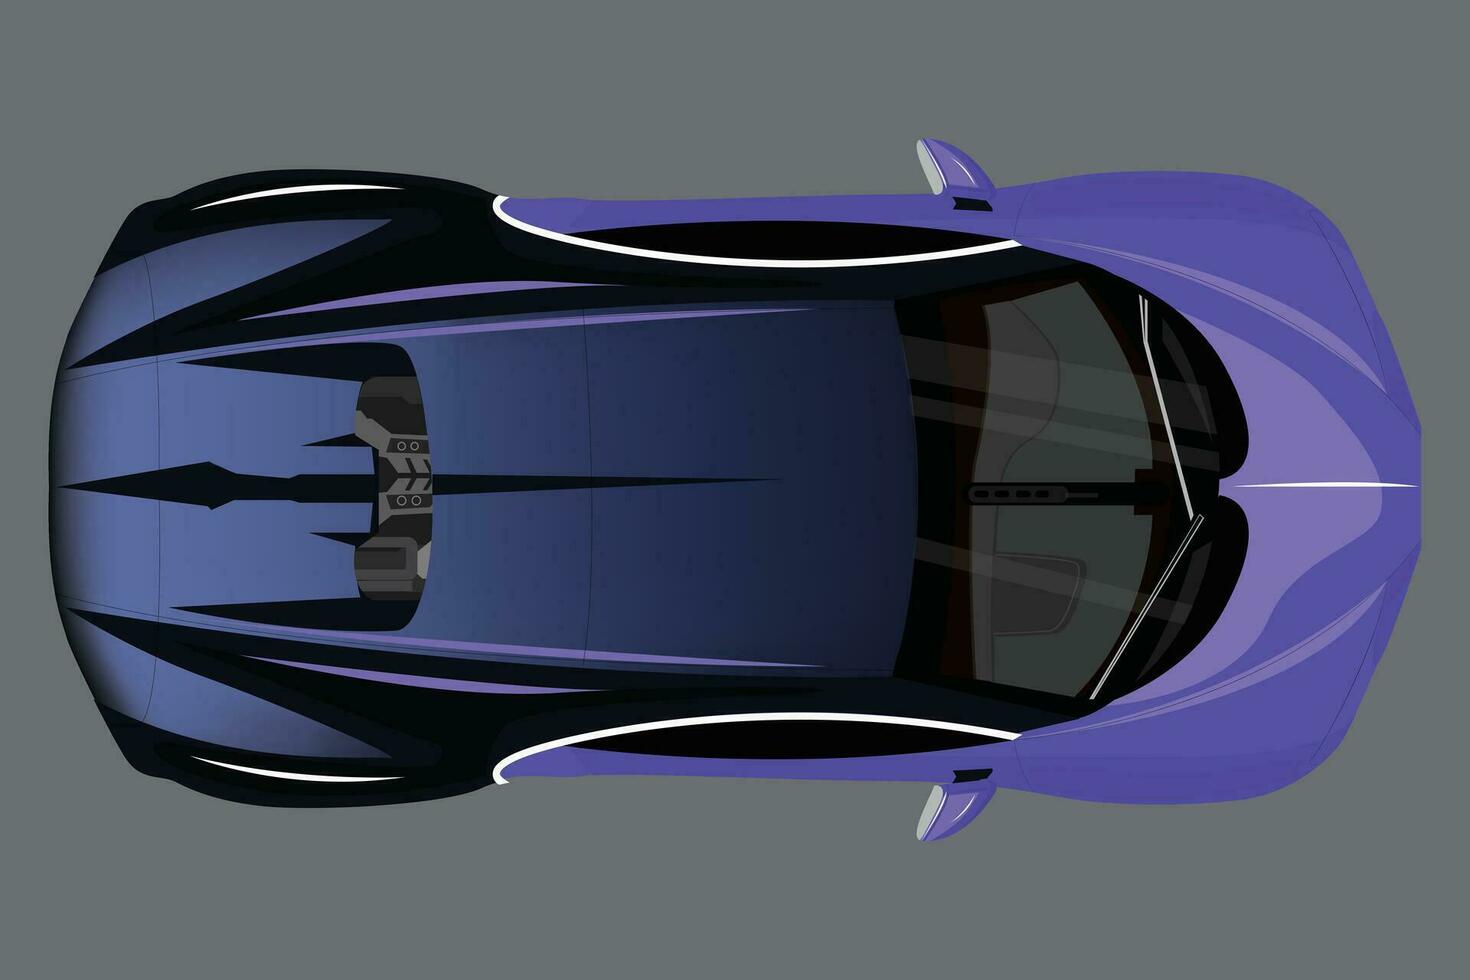 nuevo Deportes auto, moderno estilo. púrpura Deportes auto, bandera composición. 3d ilustración. realista vector púrpura coche con degradado y perspectiva desde encima